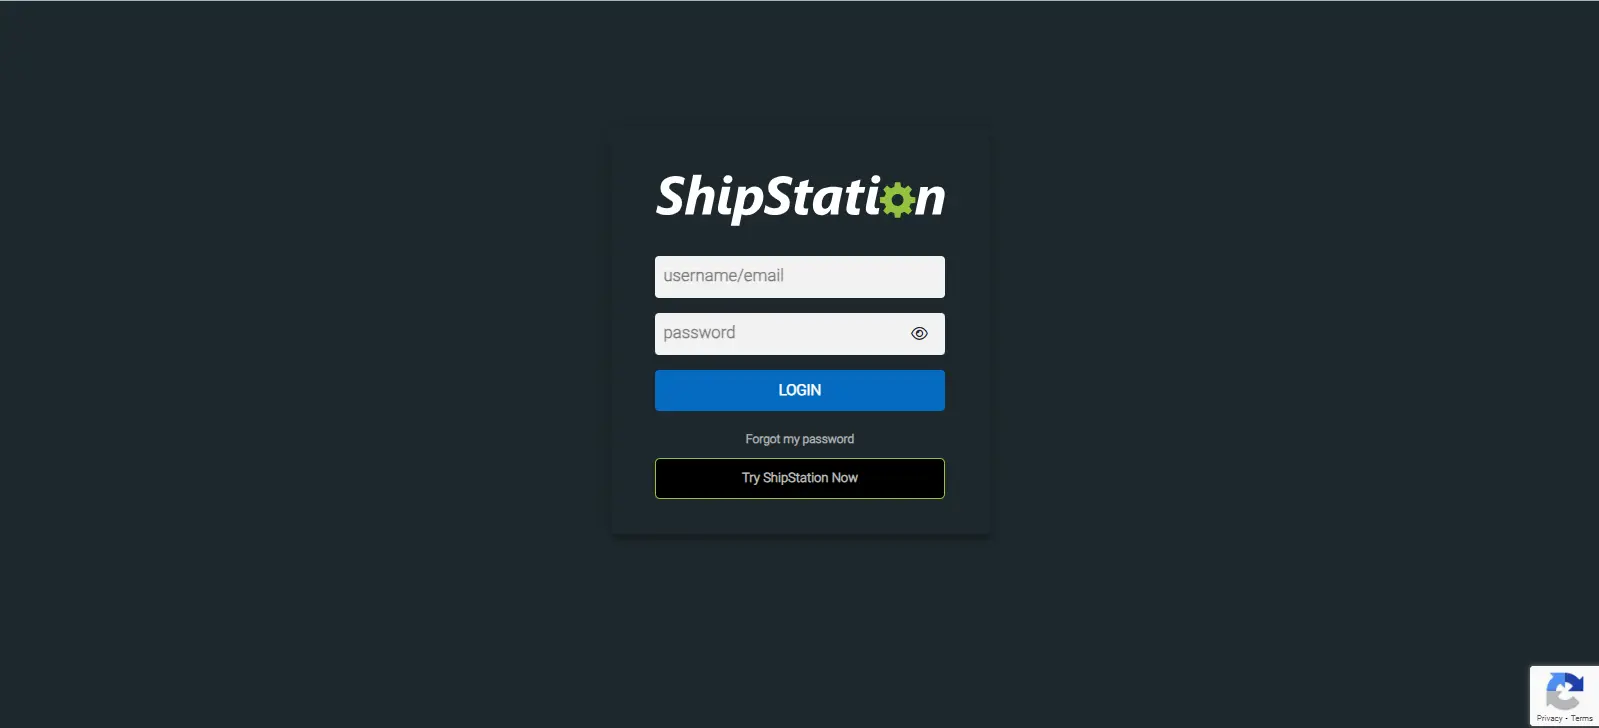 shipstation login page.webp